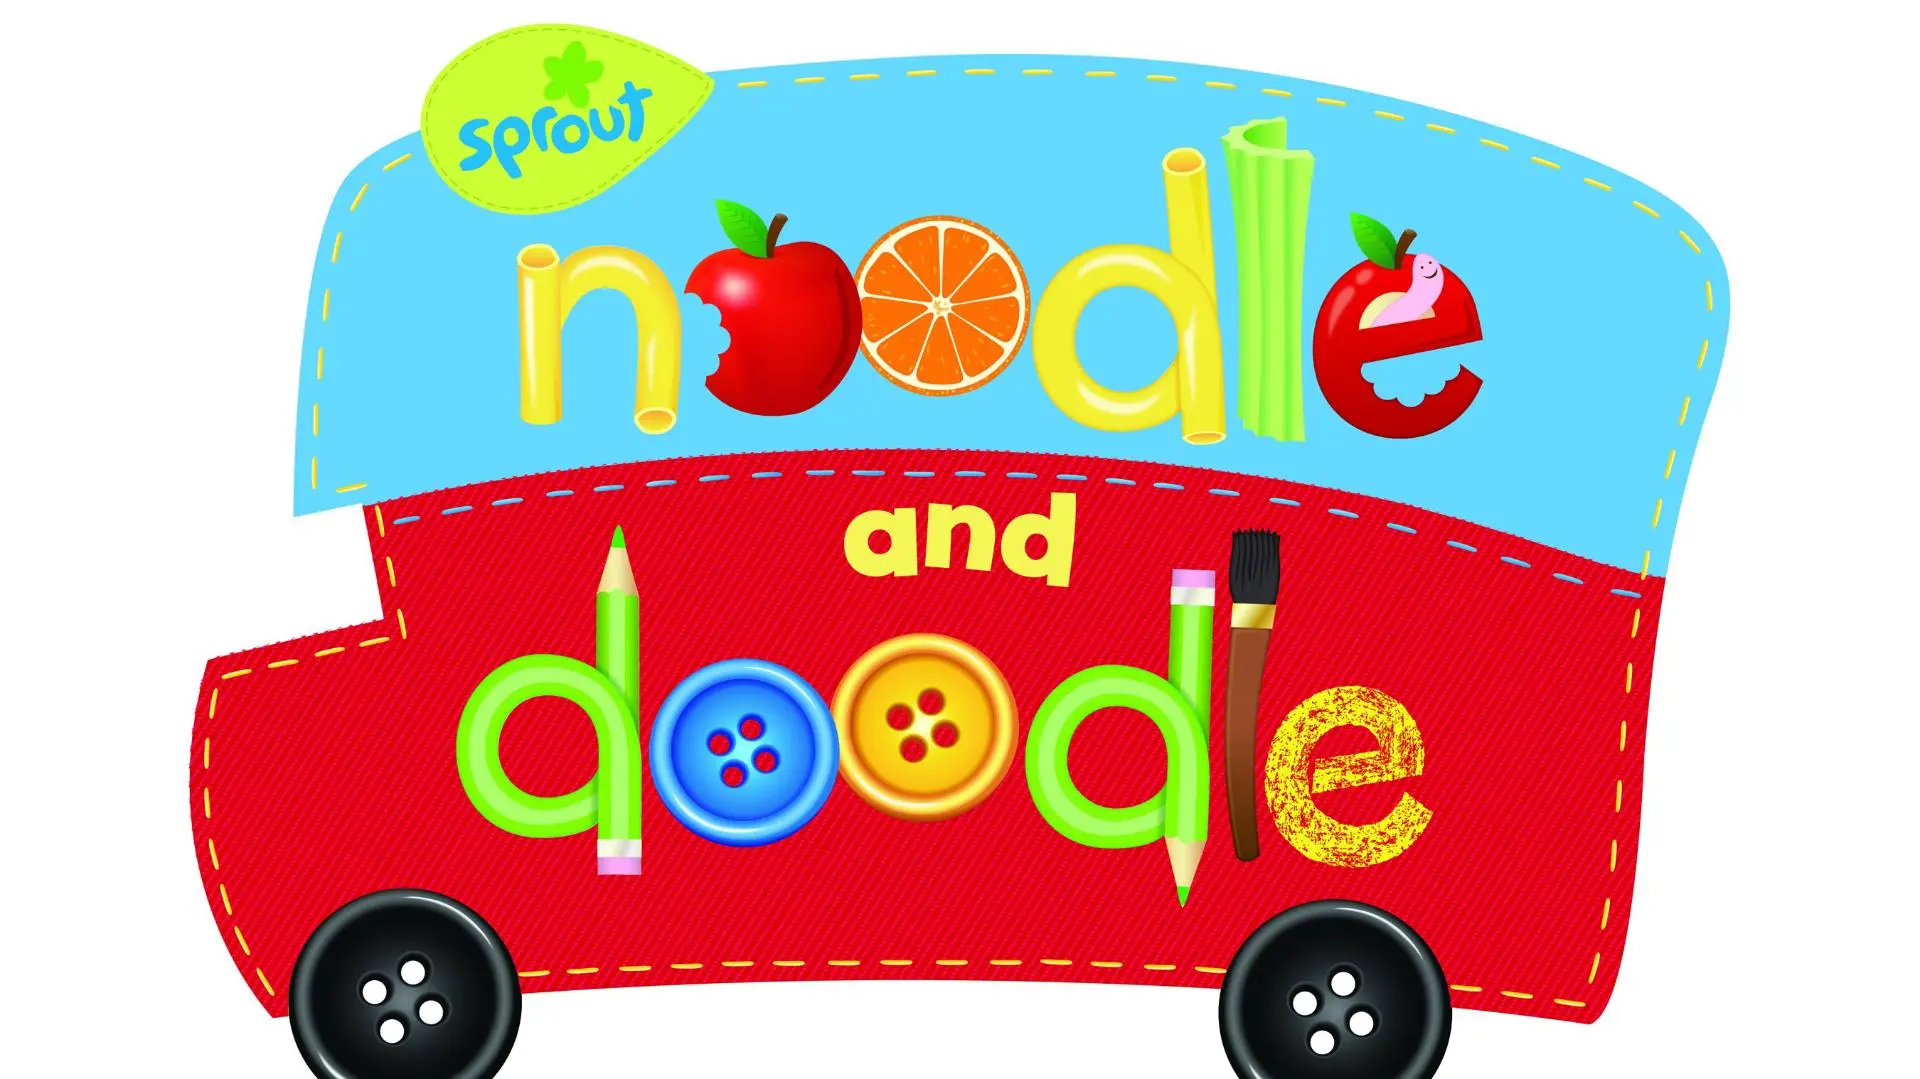 Noodle and Doodle_peliplat